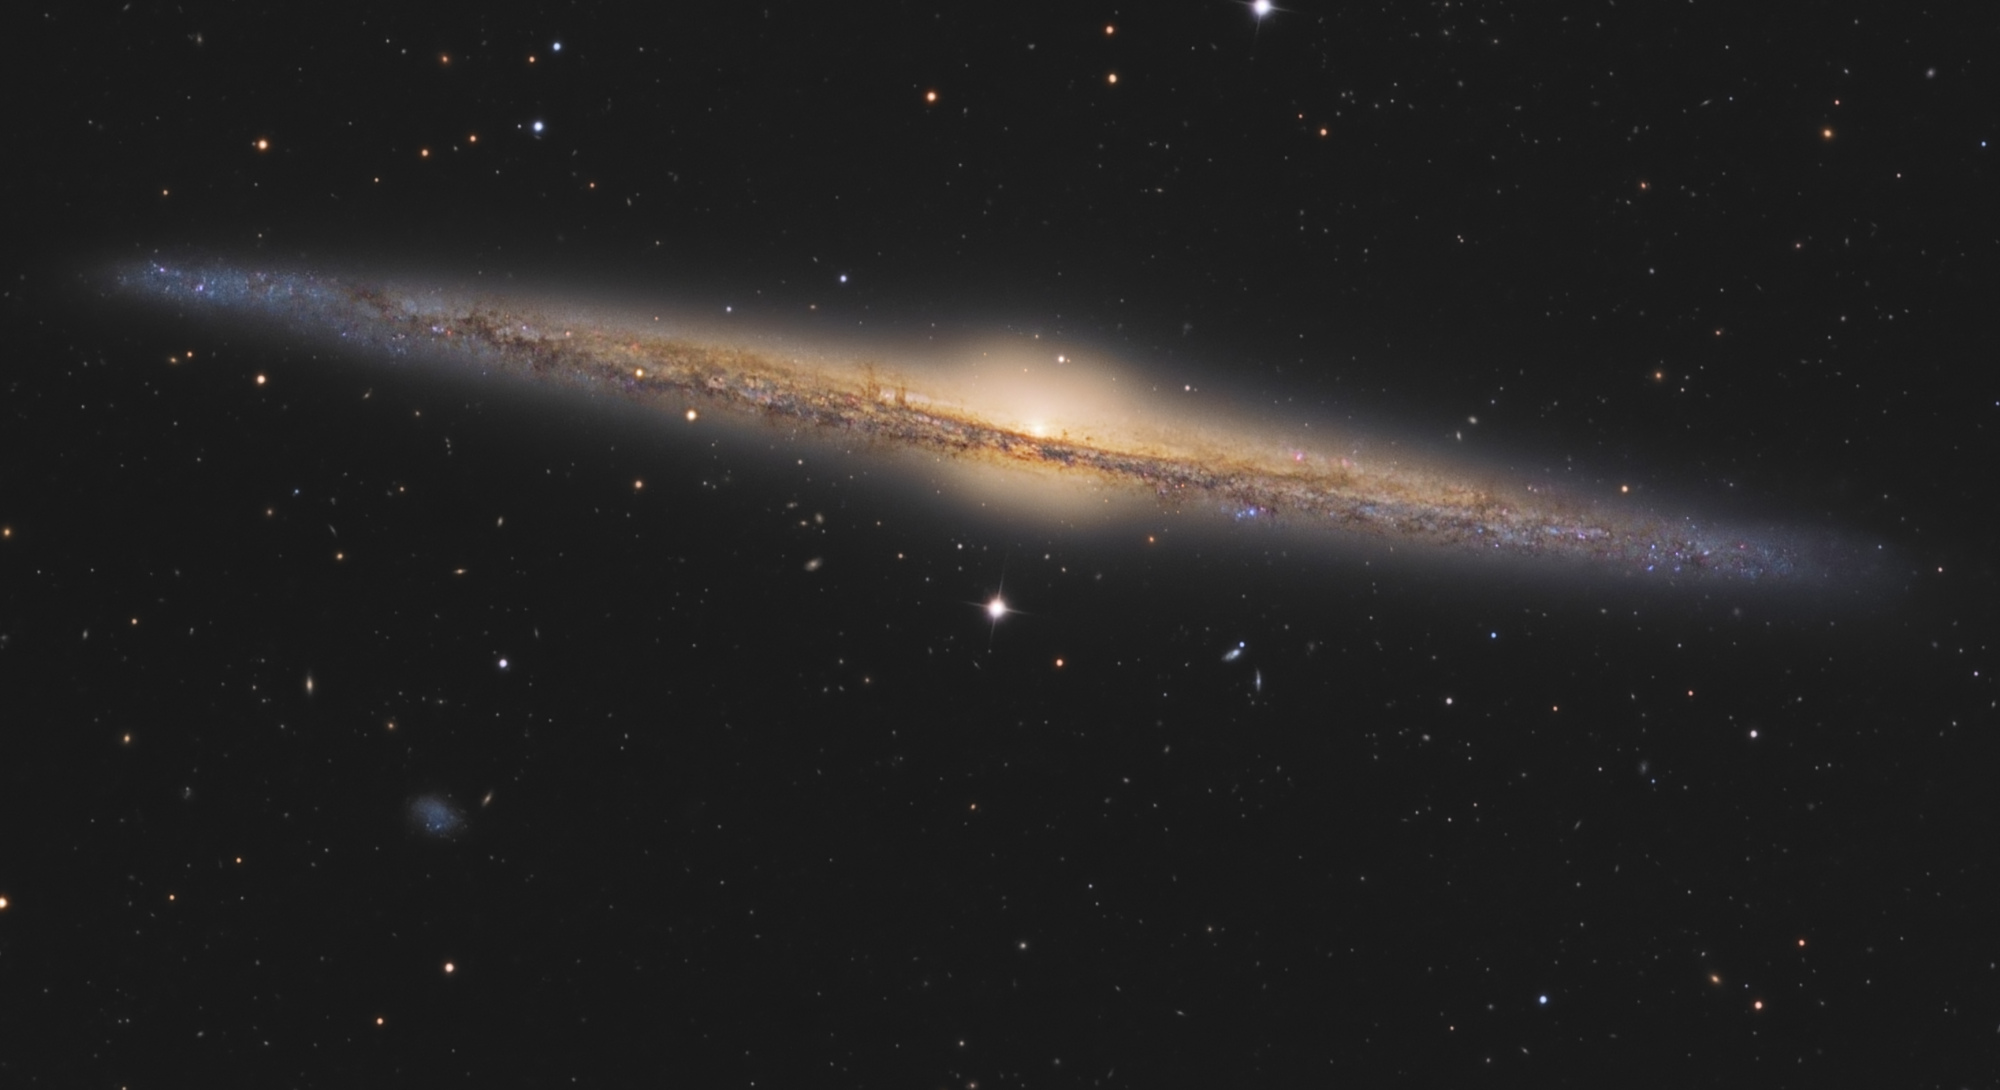 NGC-4565-zoom_web.thumb.jpg.8fecbdc68fc2856dee43aff739db7184.jpg